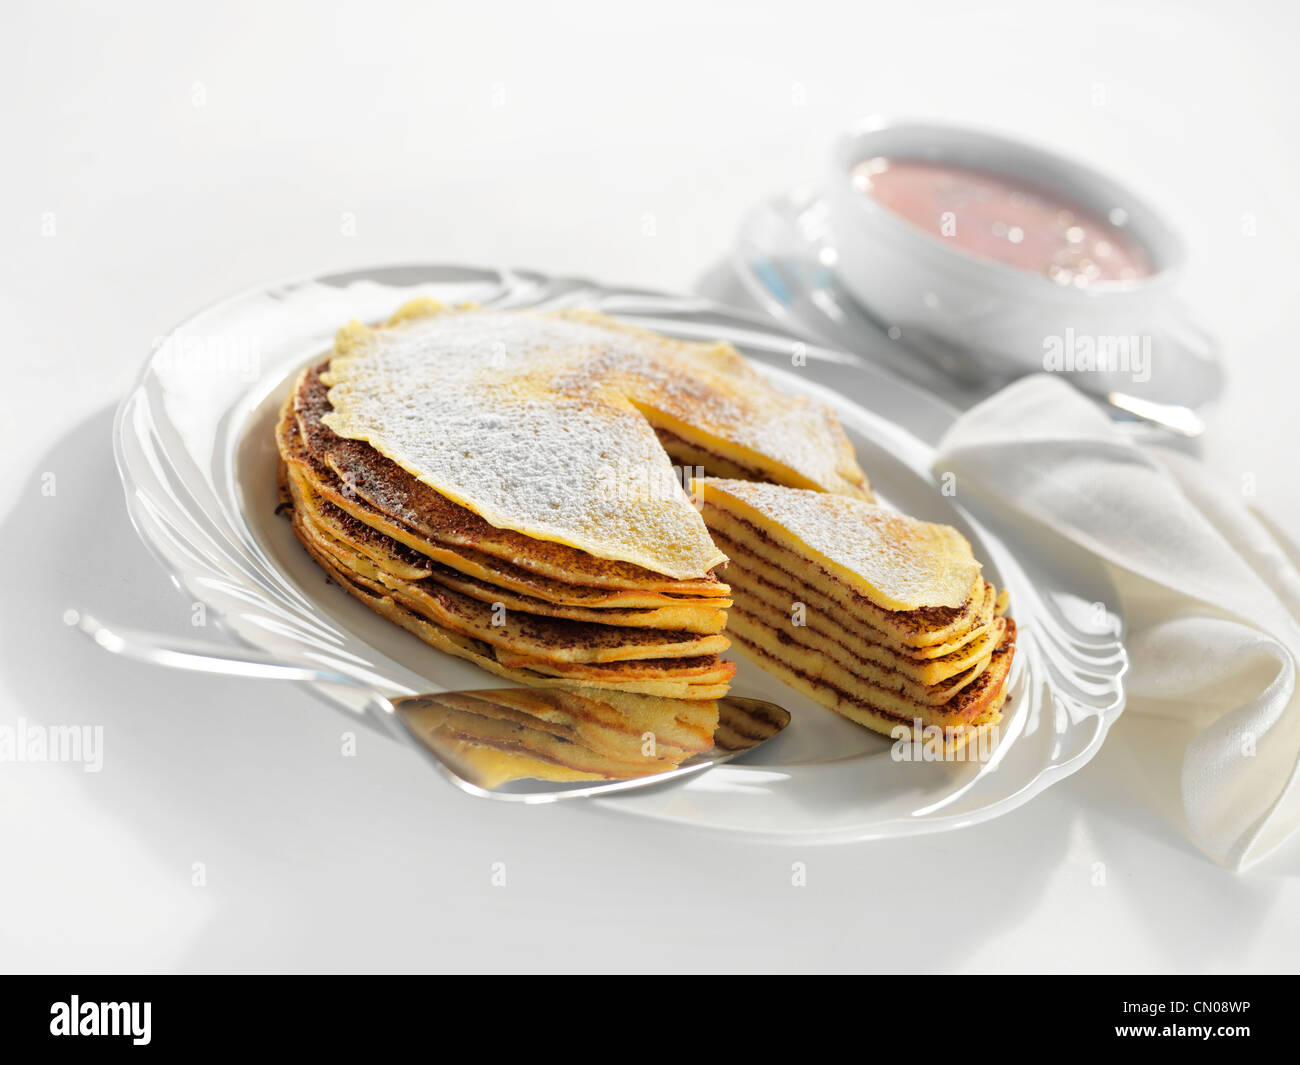 Slid pancake Stock Photo